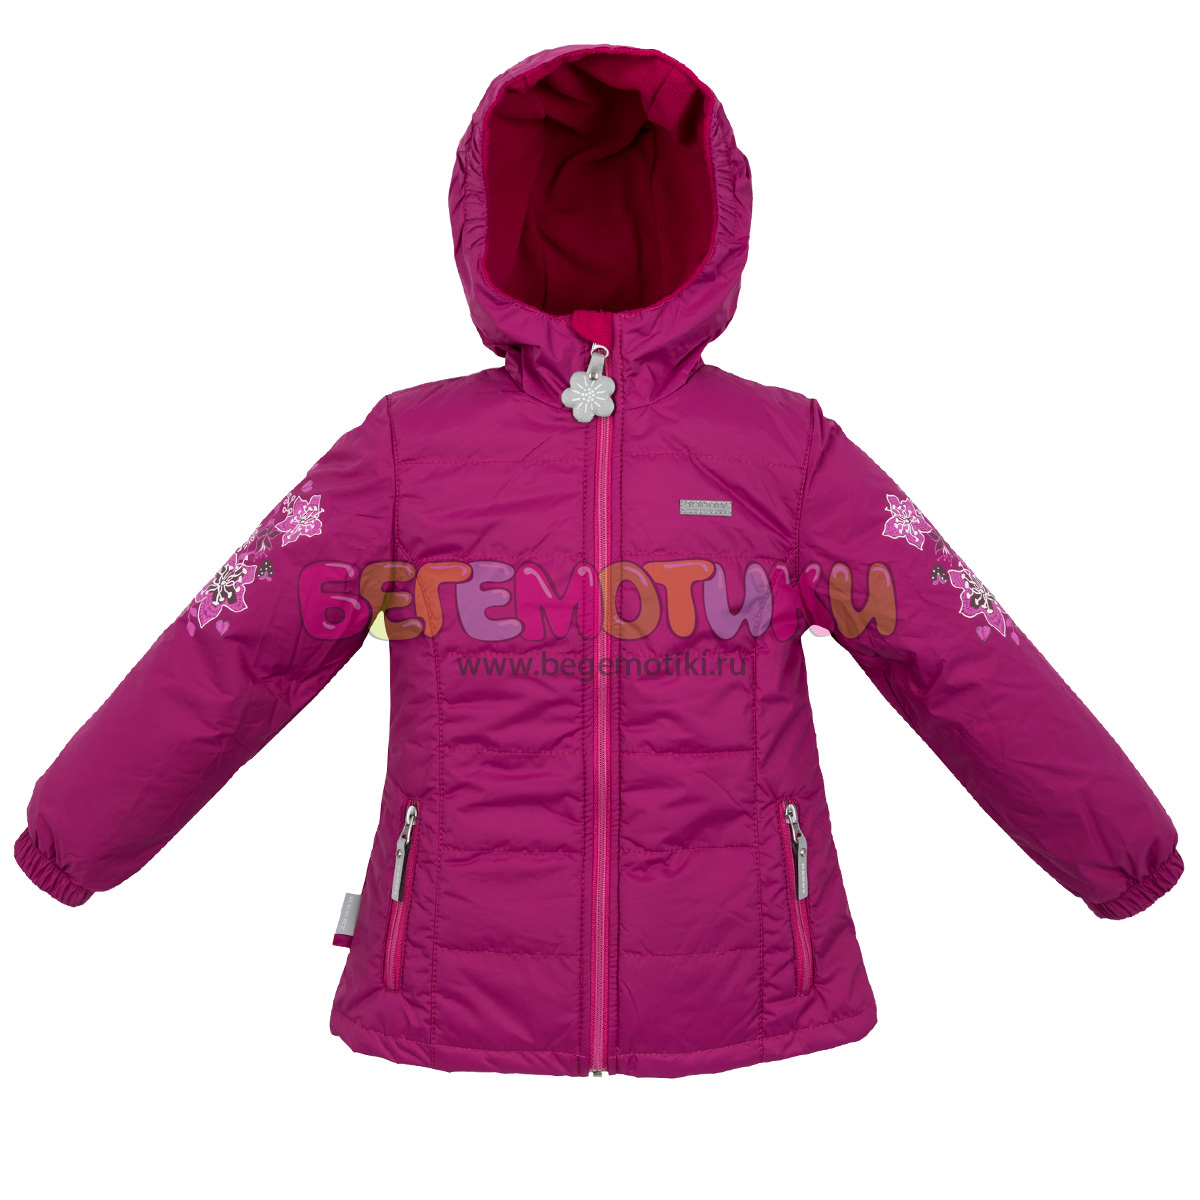 Купить Куртка для девочек BRITT Kerry, Размер 116, Цвет 271-темная фуксия K19029-271_116,